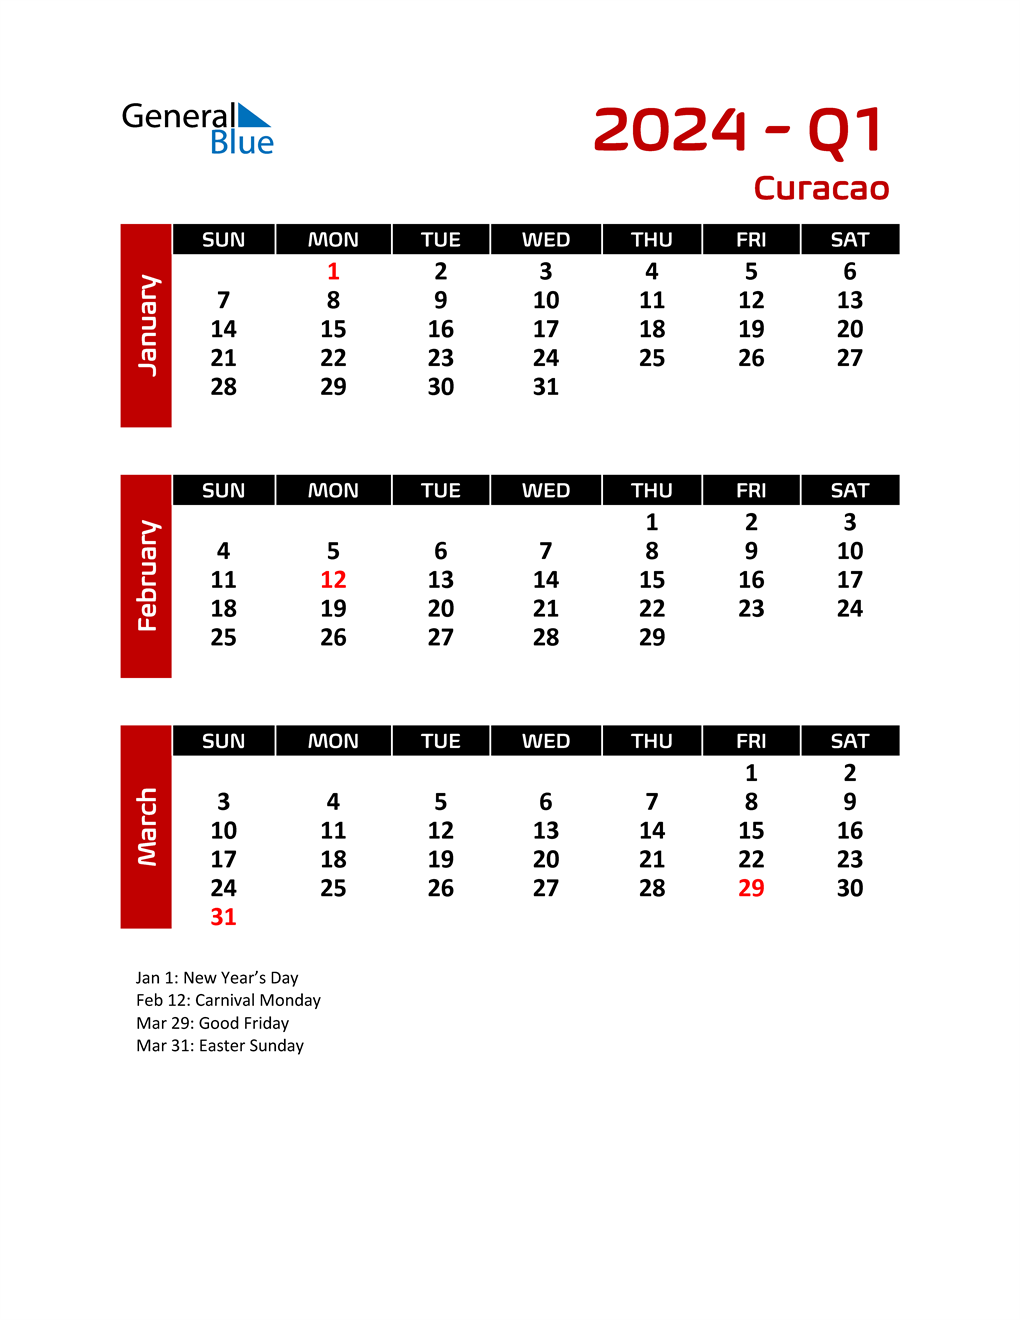 Q1 2024 Quarterly Calendar for Curacao